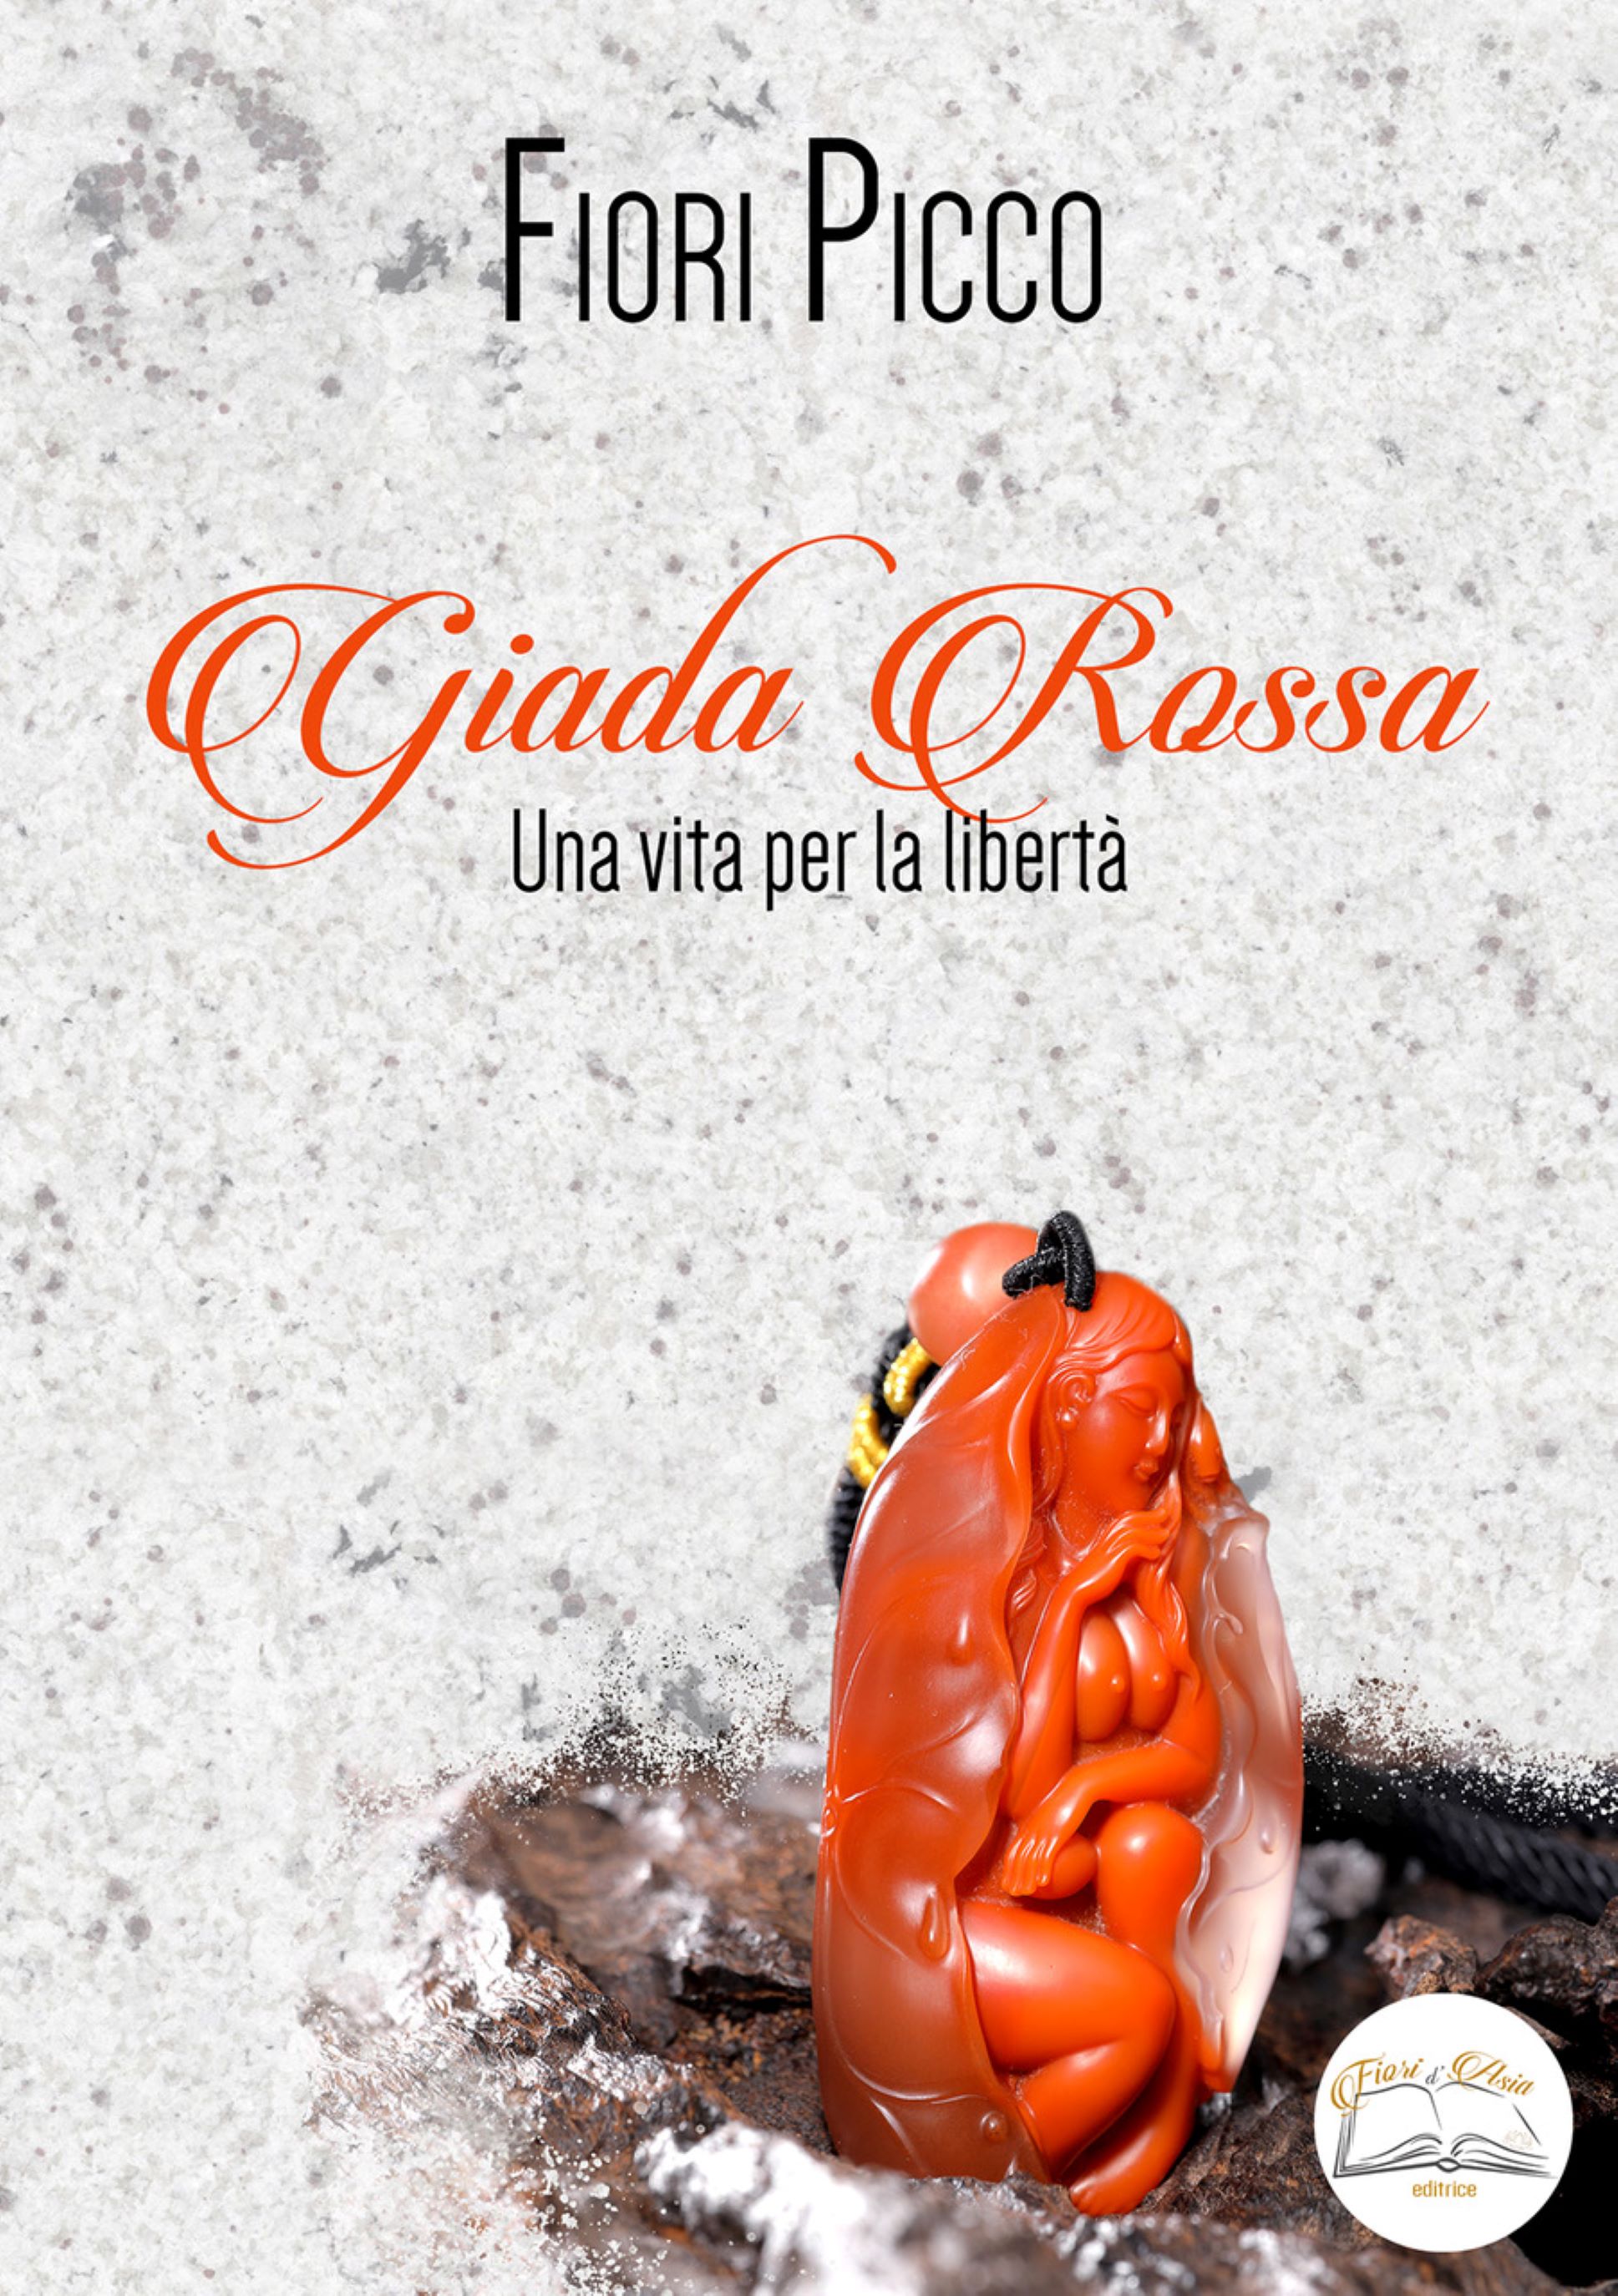 “Giada Rossa - Una vita per la libertà”: il romanzo-verità e di denuncia della scrittrice Fiori Picco